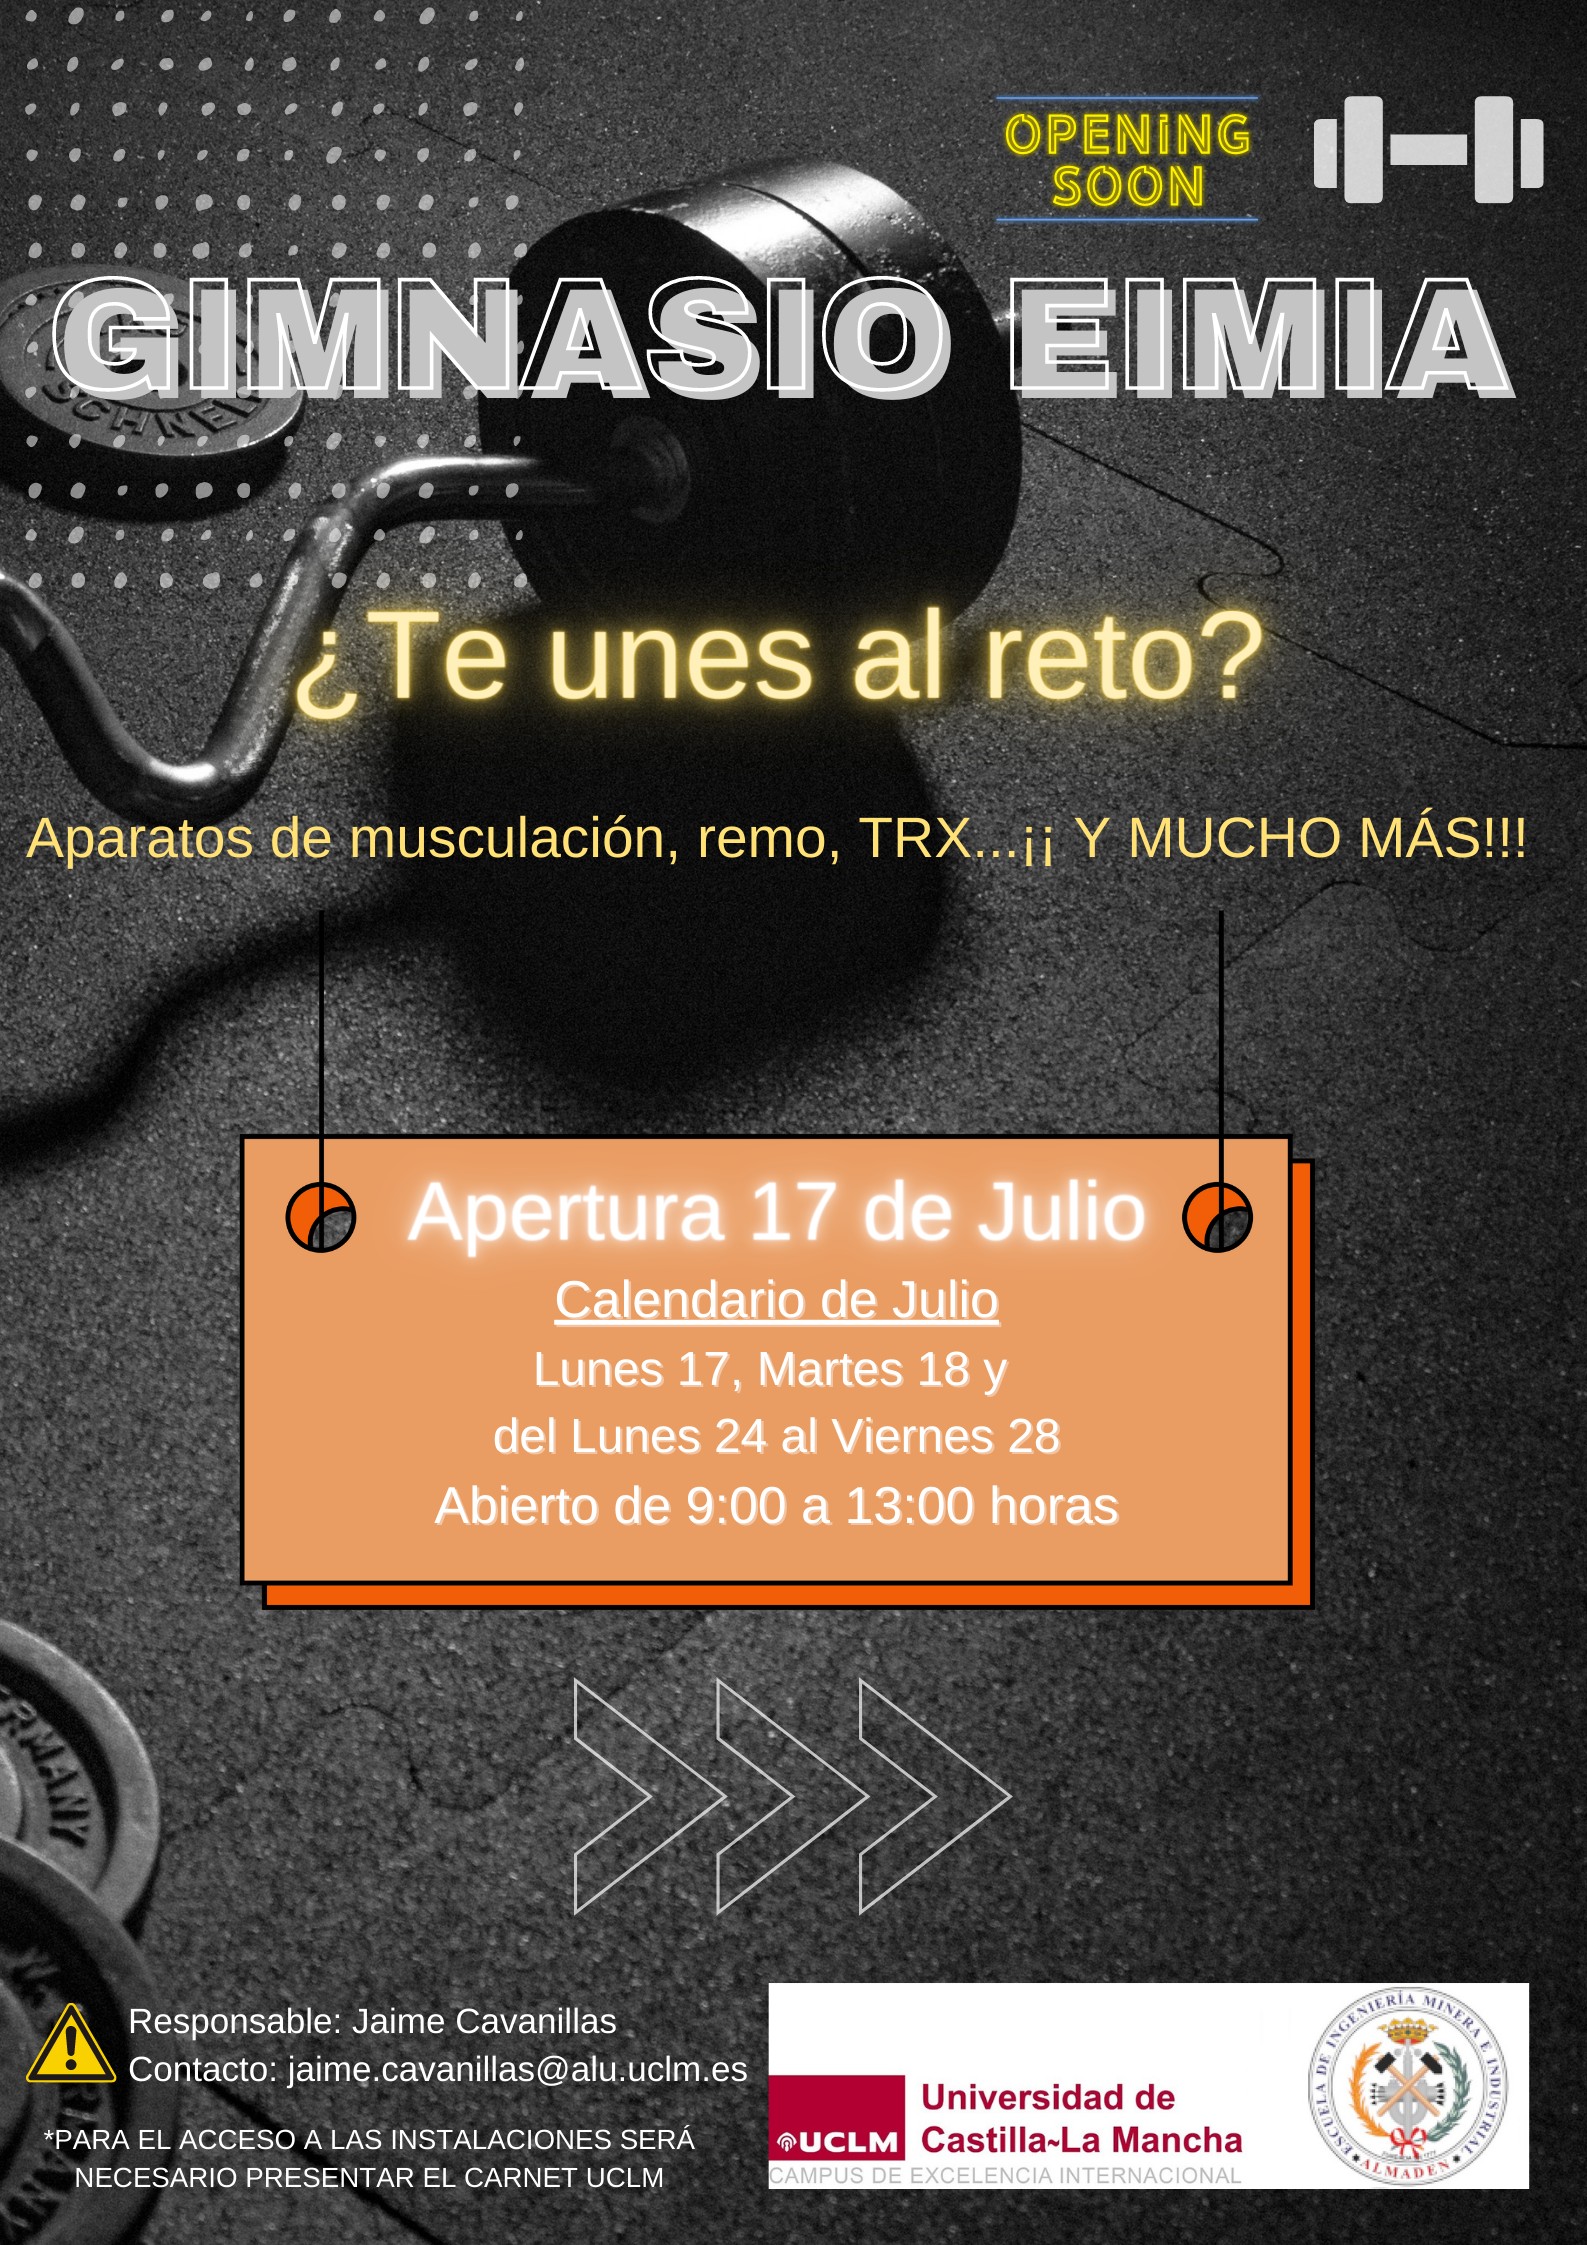 Cartel anunciador de la apertura del GIMNASIO de la EIMIA